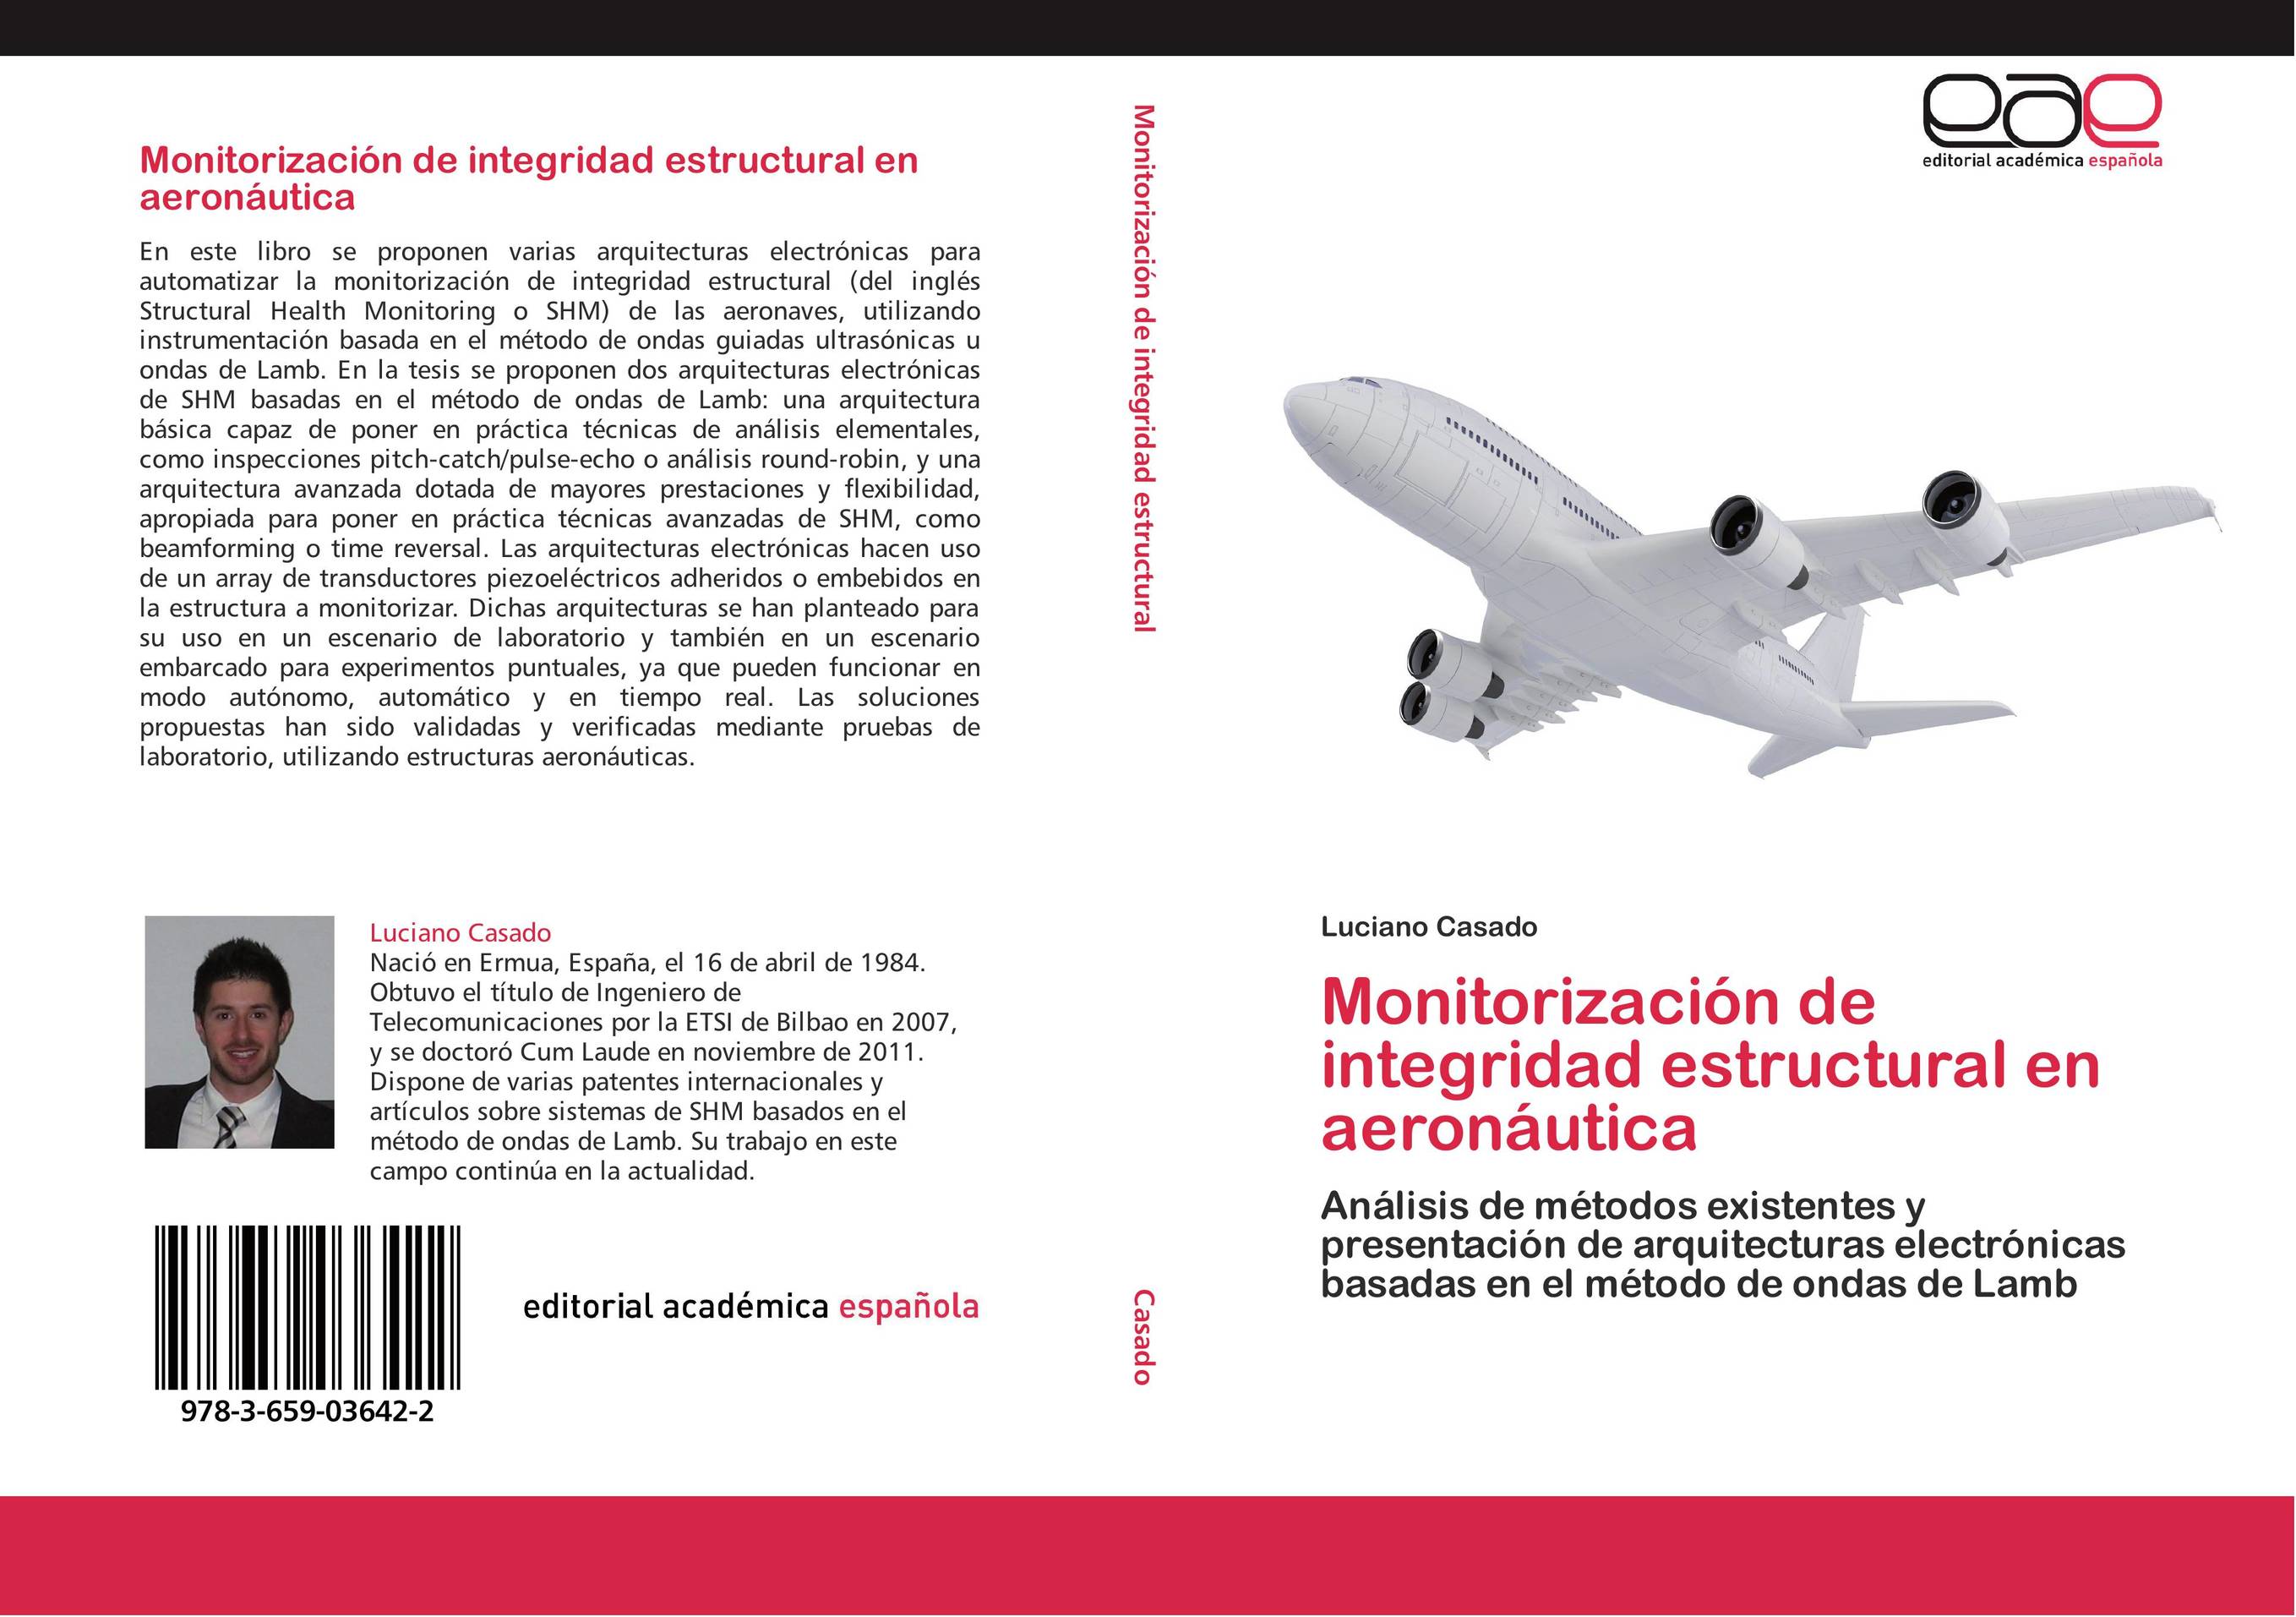 Monitorización de integridad estructural en aeronáutica